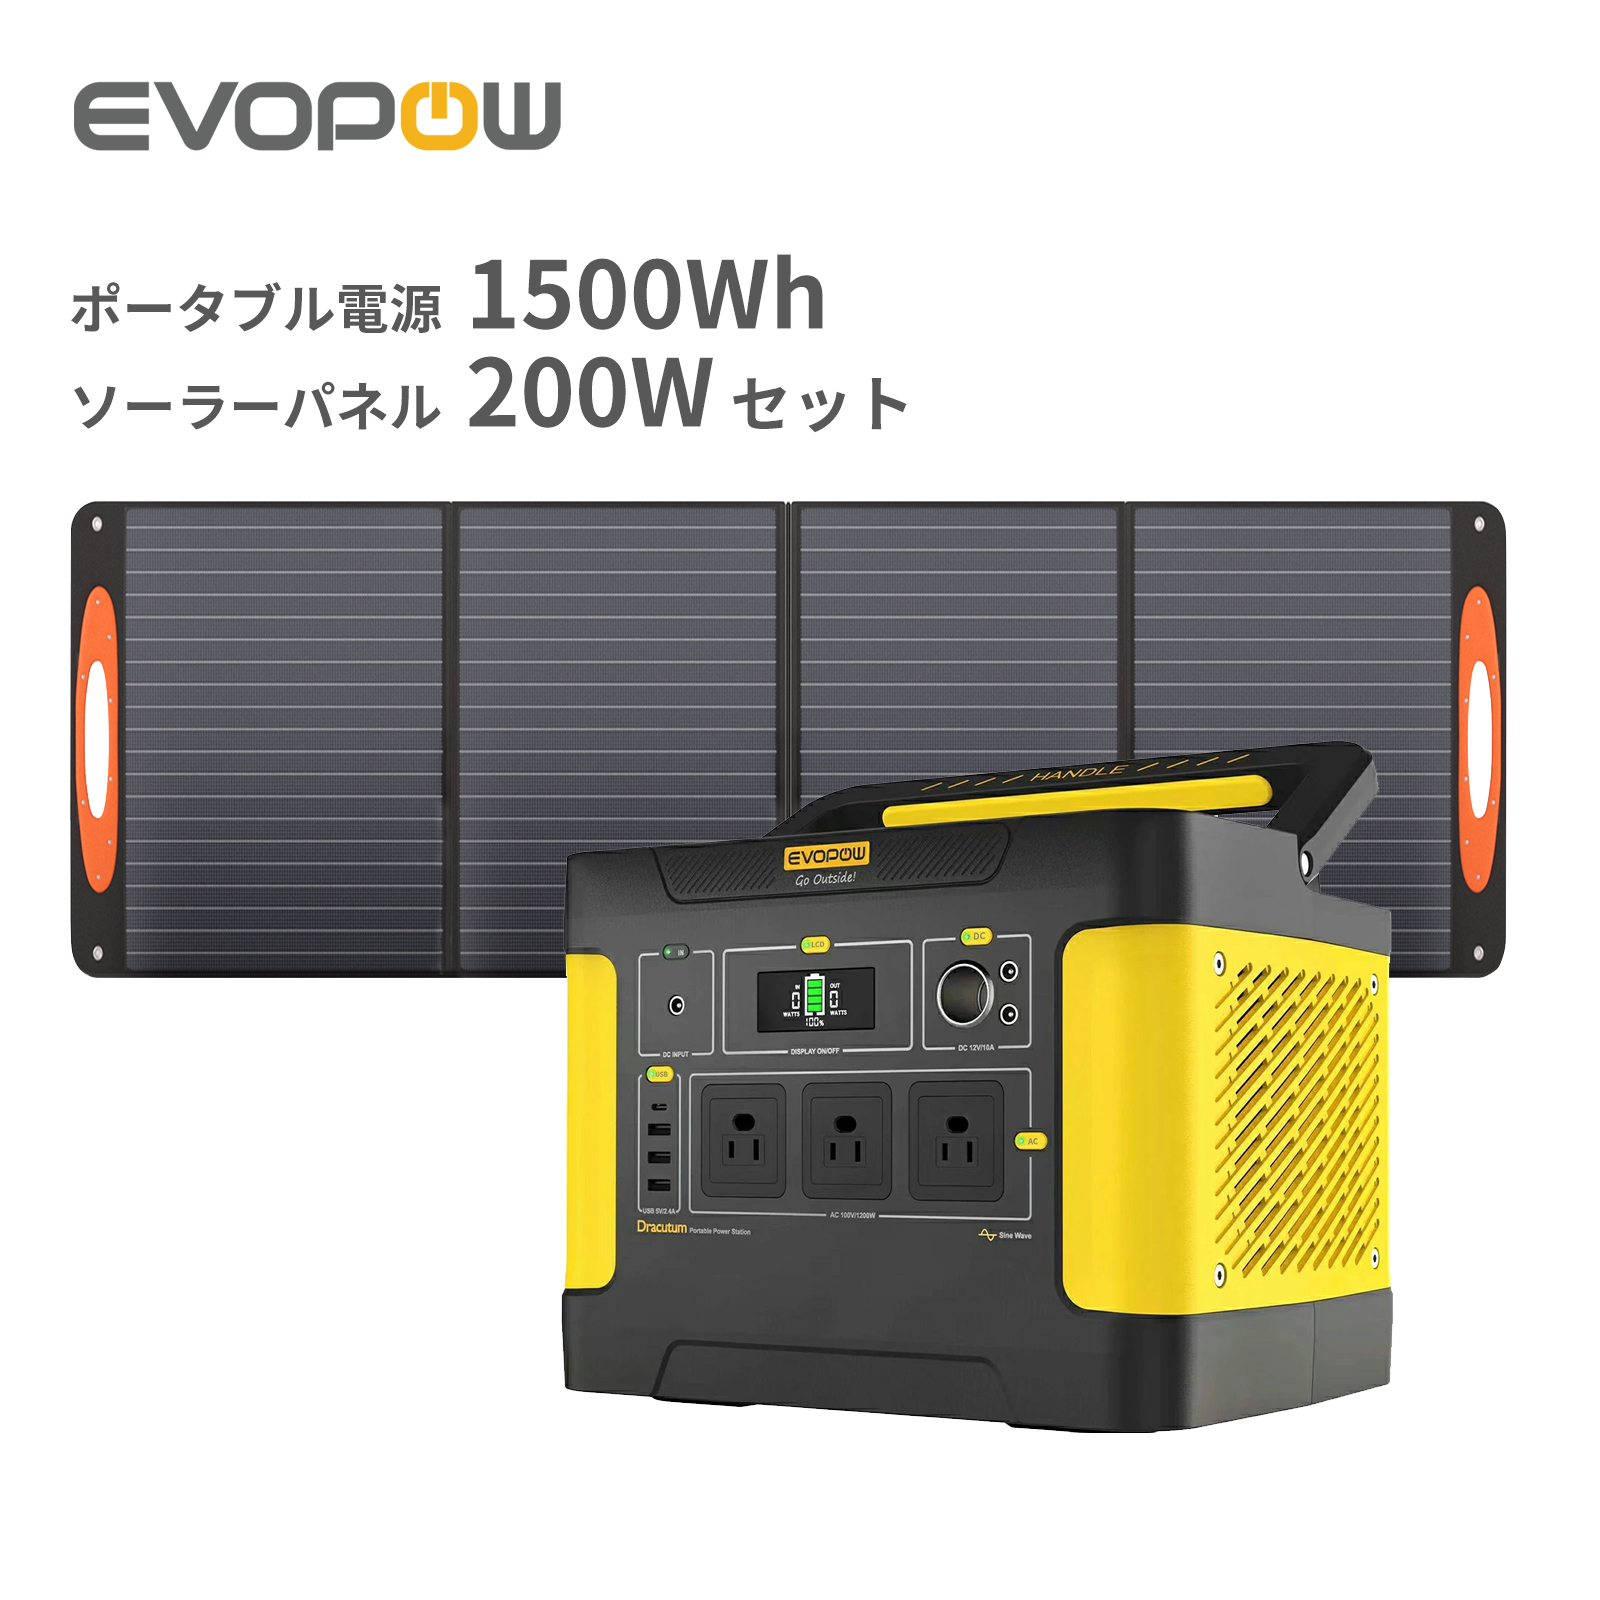 【楽天市場】【クーポン利用で85,800円】Evopow ソーラー発電機 